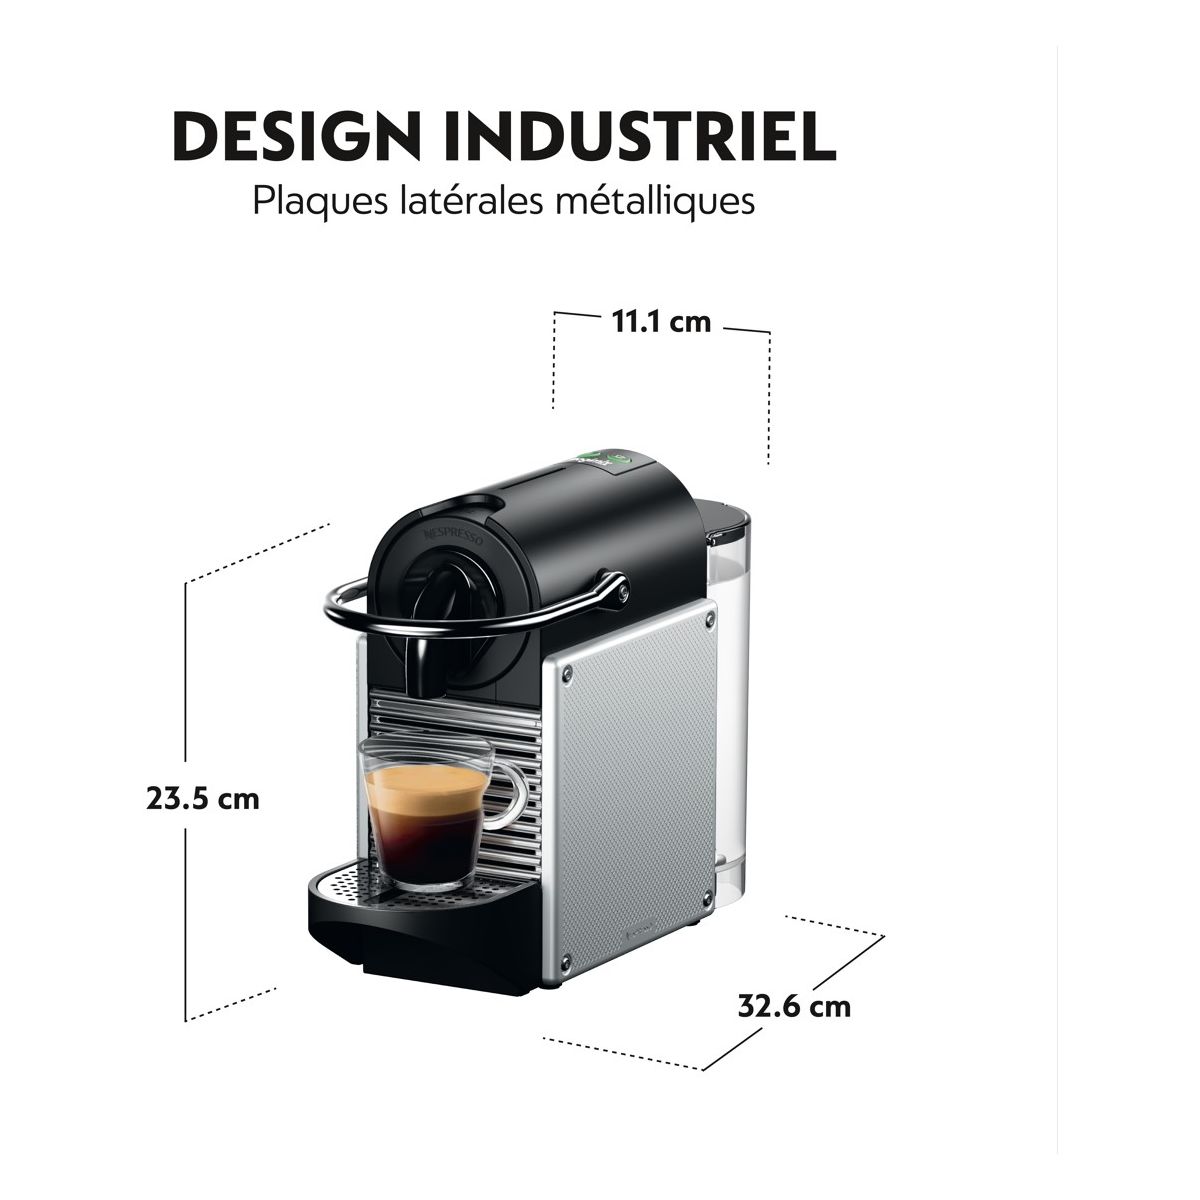 Magimix M110 Cafetière Nespresso(Noire) : : Cuisine et Maison